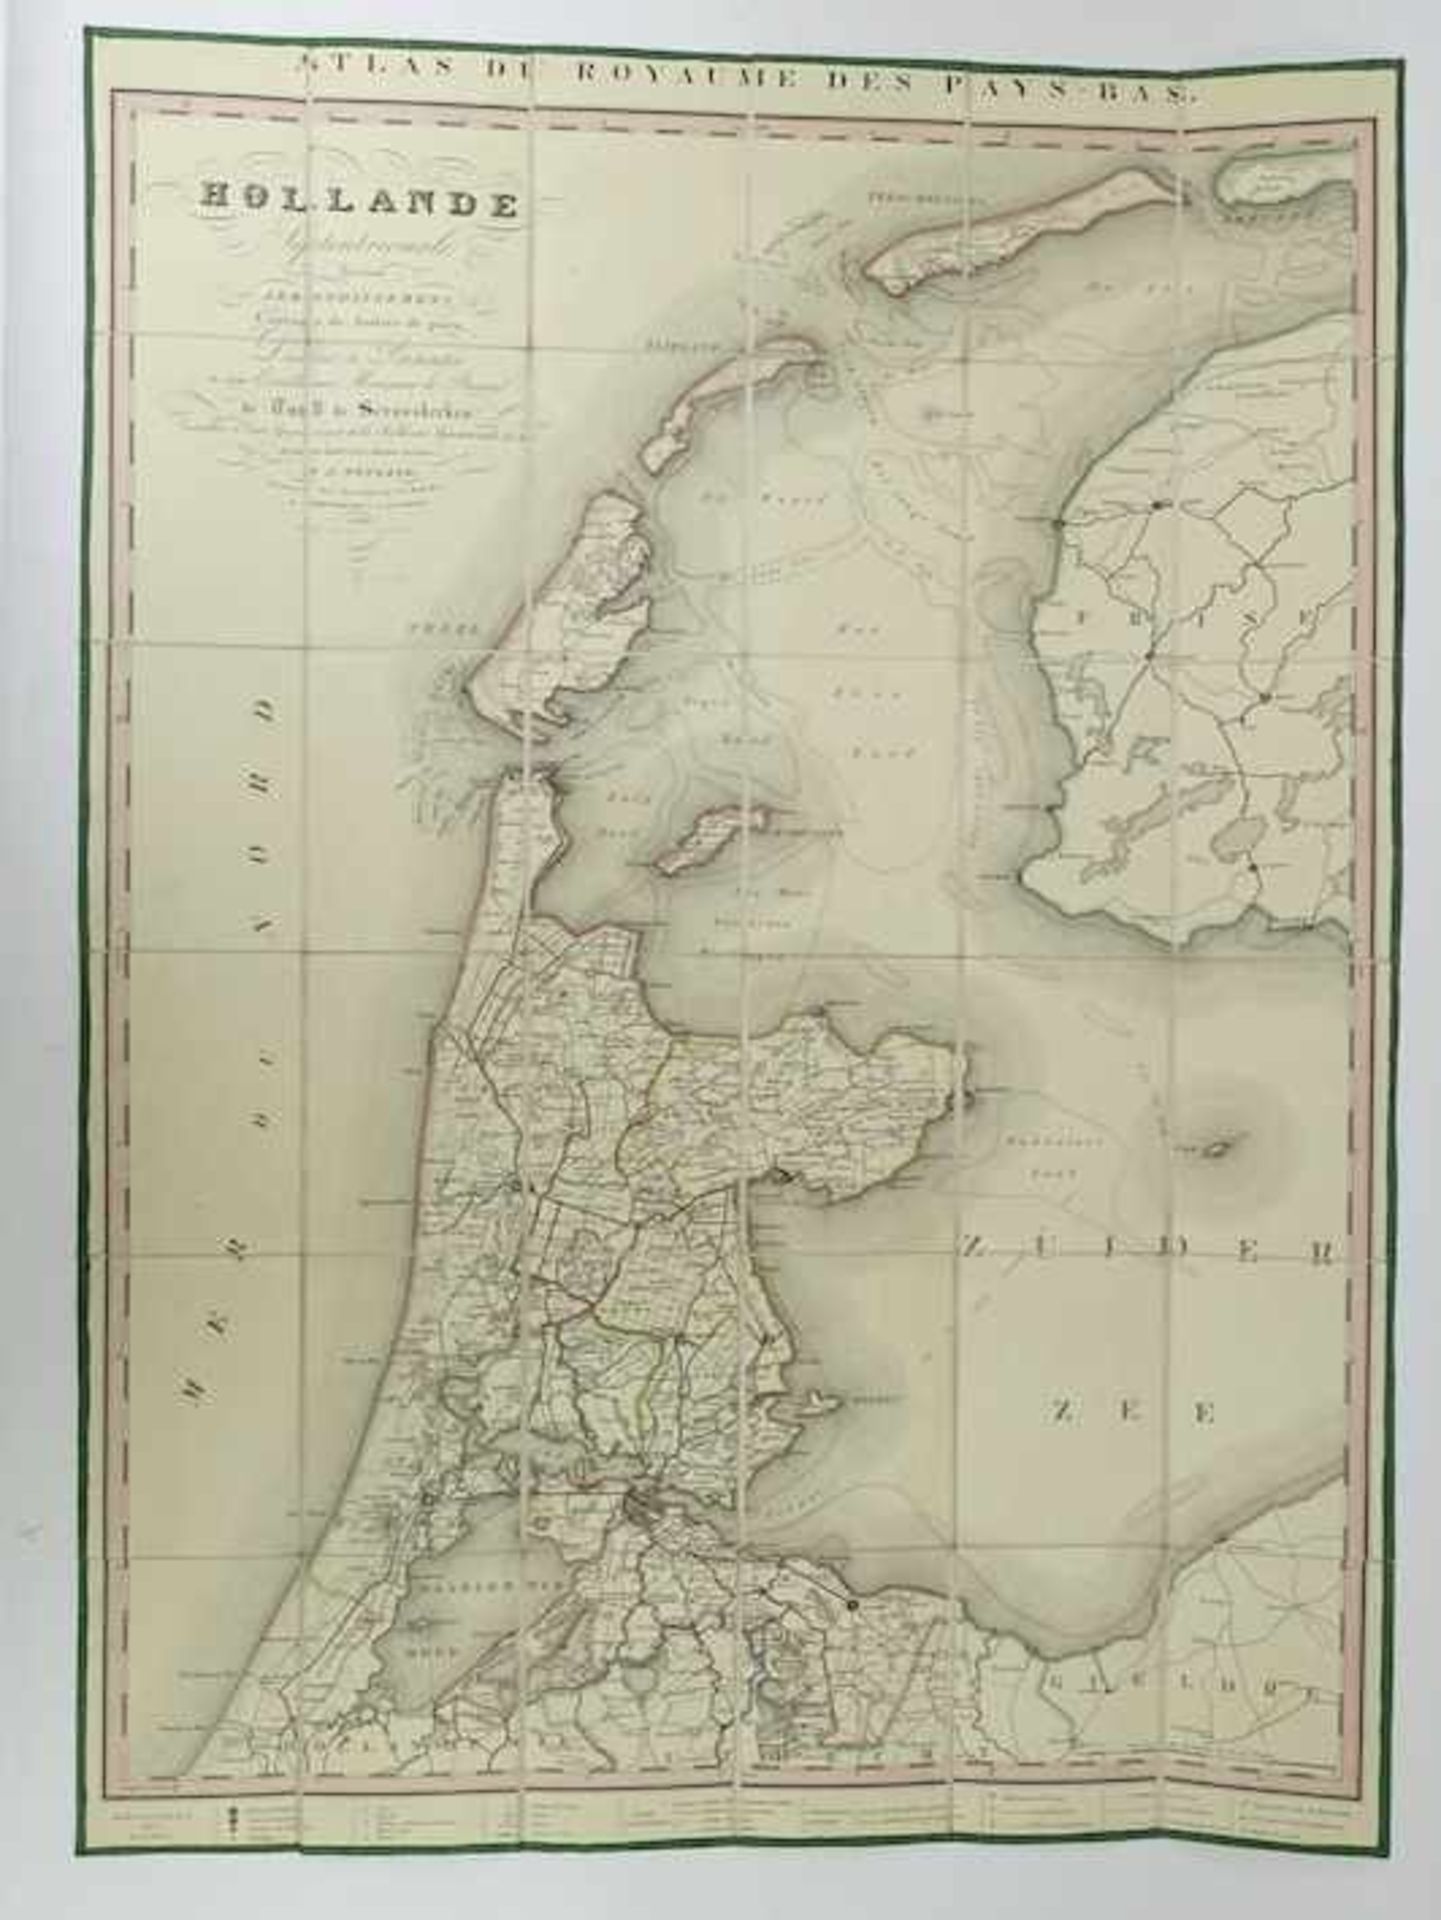 HOLLANDE SEPTENTRIONALE divisée en arrondissemens et cantons de justice de paix. The Hague, F.H.